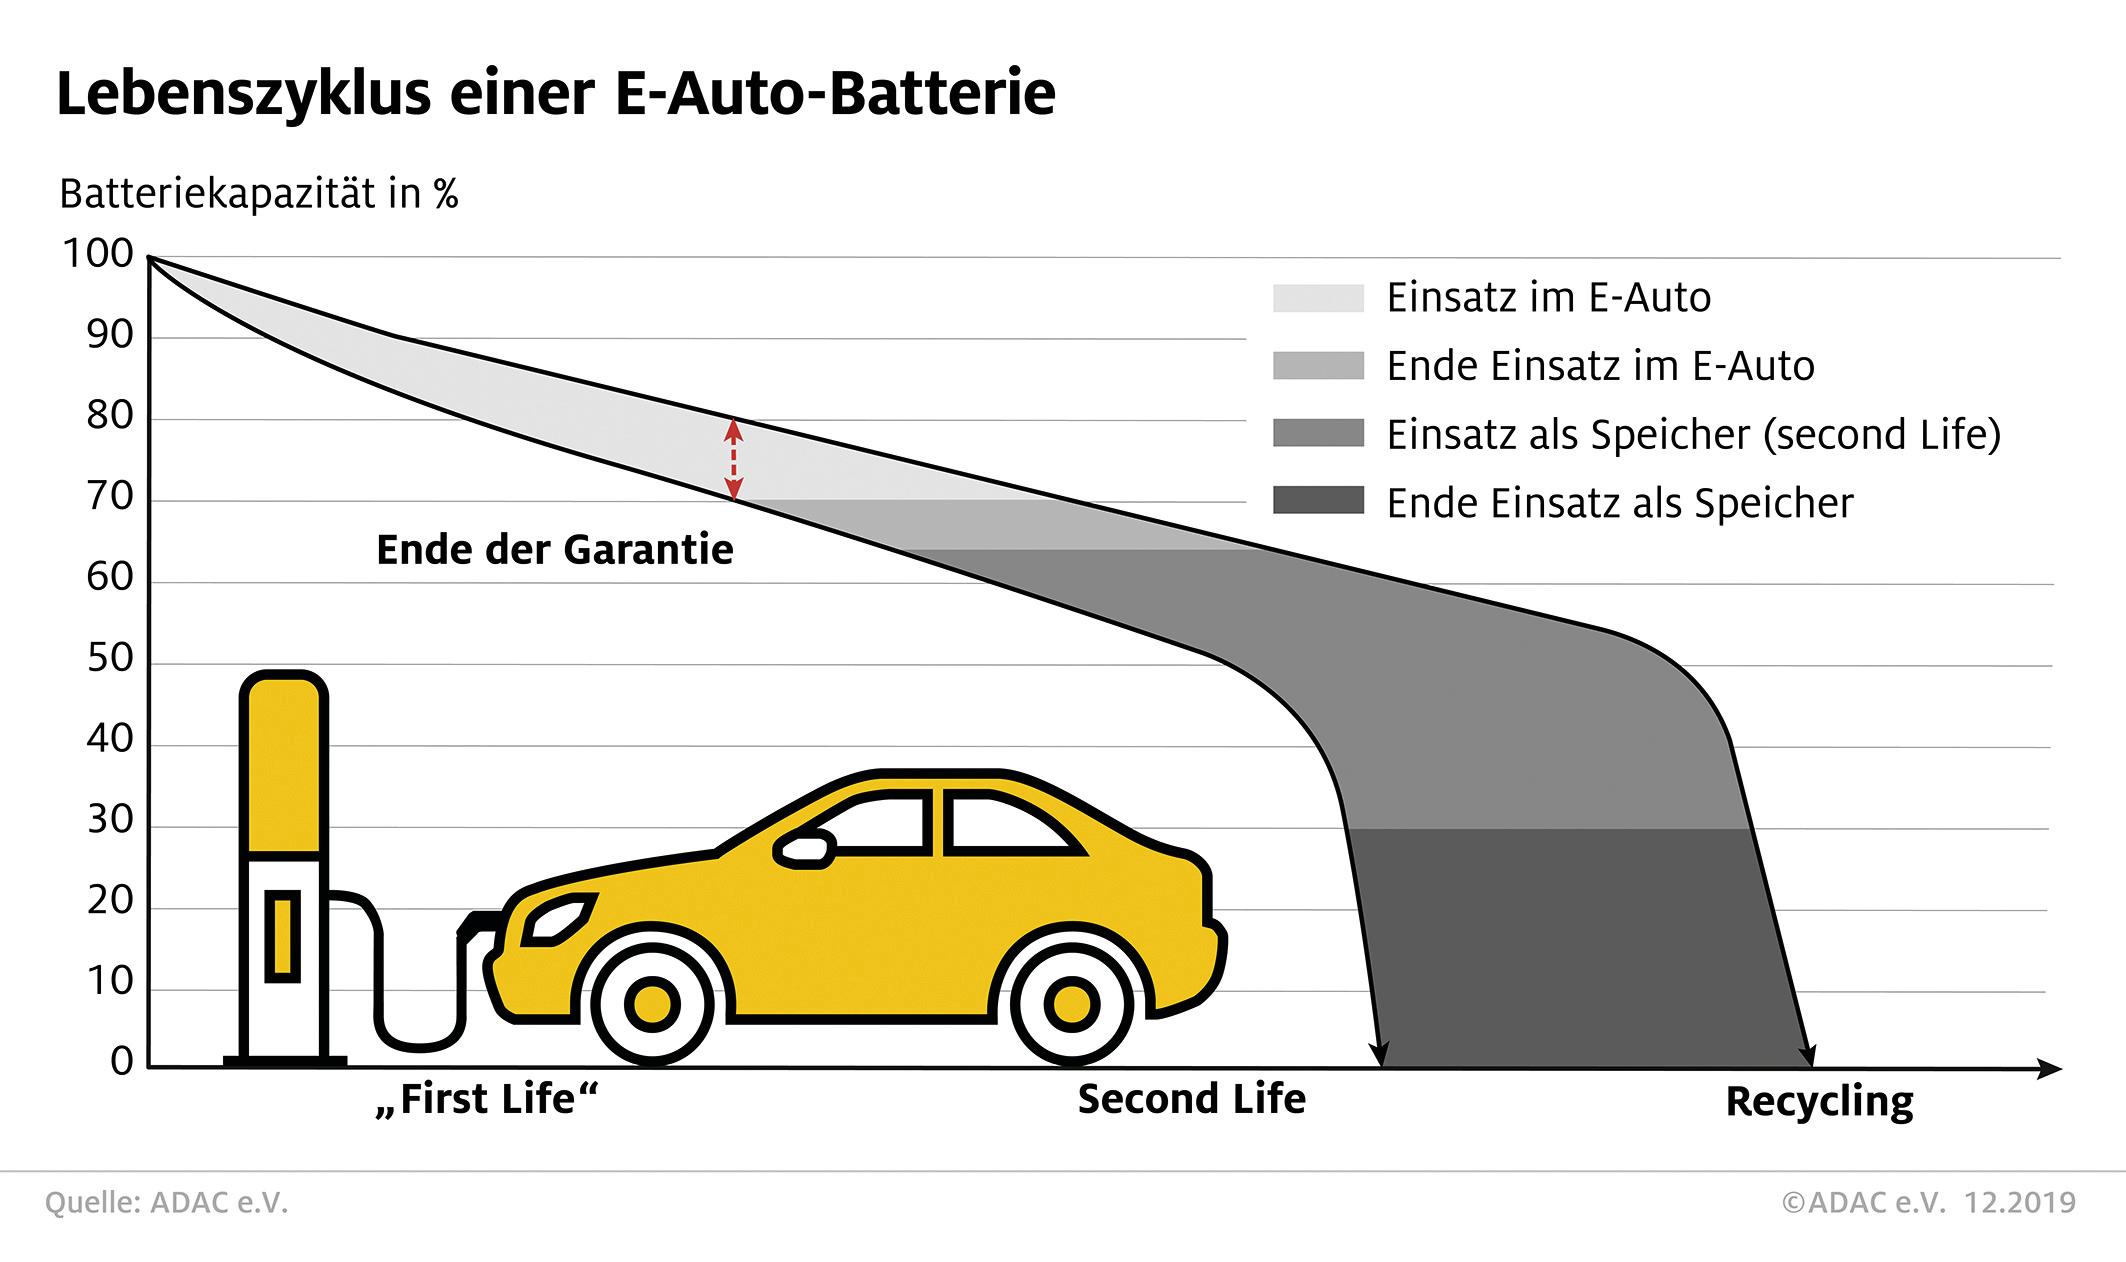 Das zweite Leben von E-Auto-Batterien